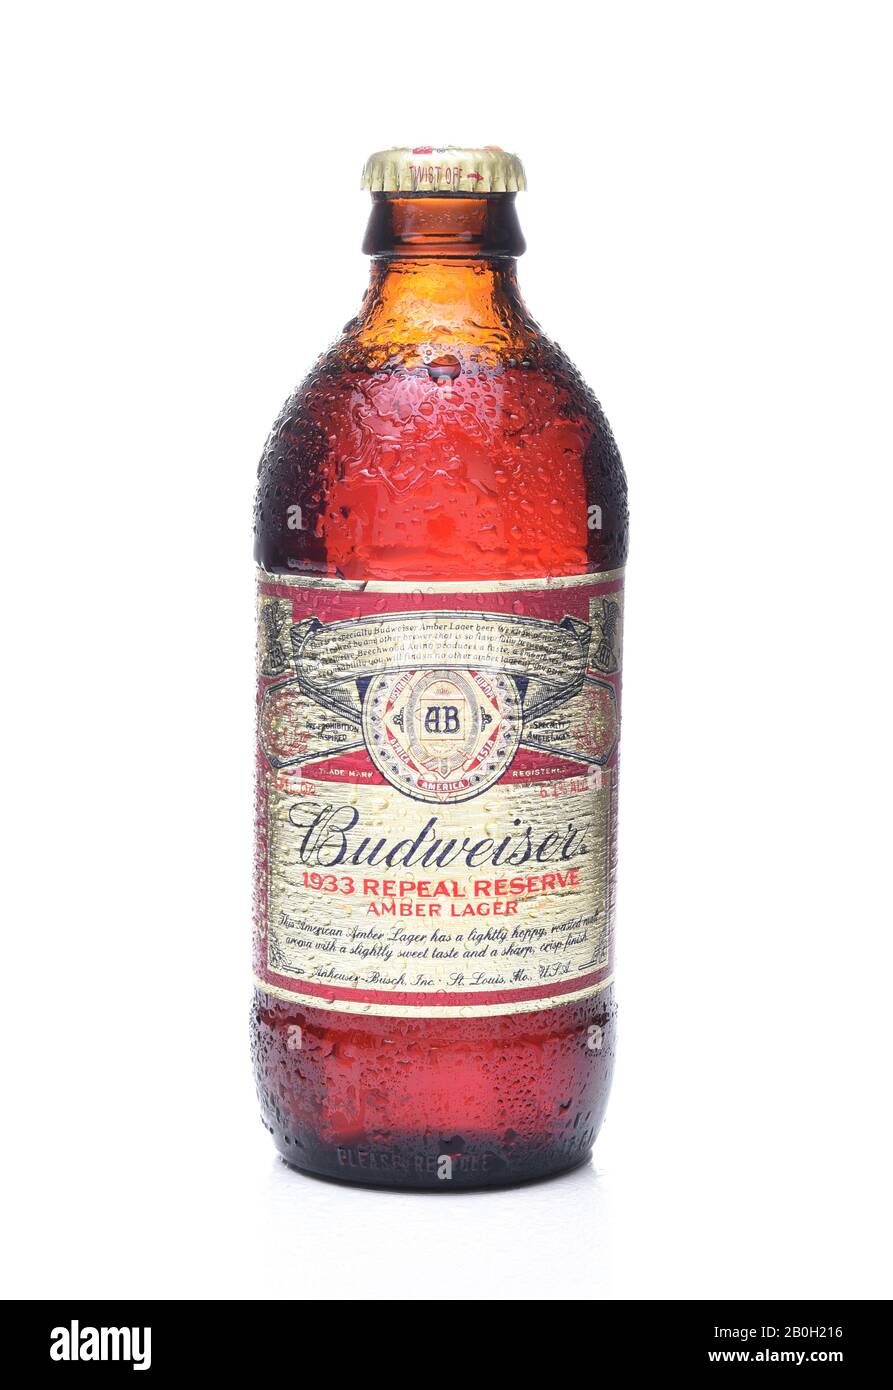 Irvine, CA - 7. NOVEMBER 2017: Budweiser 1933 Repeal Reserve Amber Lager. Budweiser veröffentlicht die Prohibition Era recipie, um die Taten Vertreter zu feiern Stockfoto